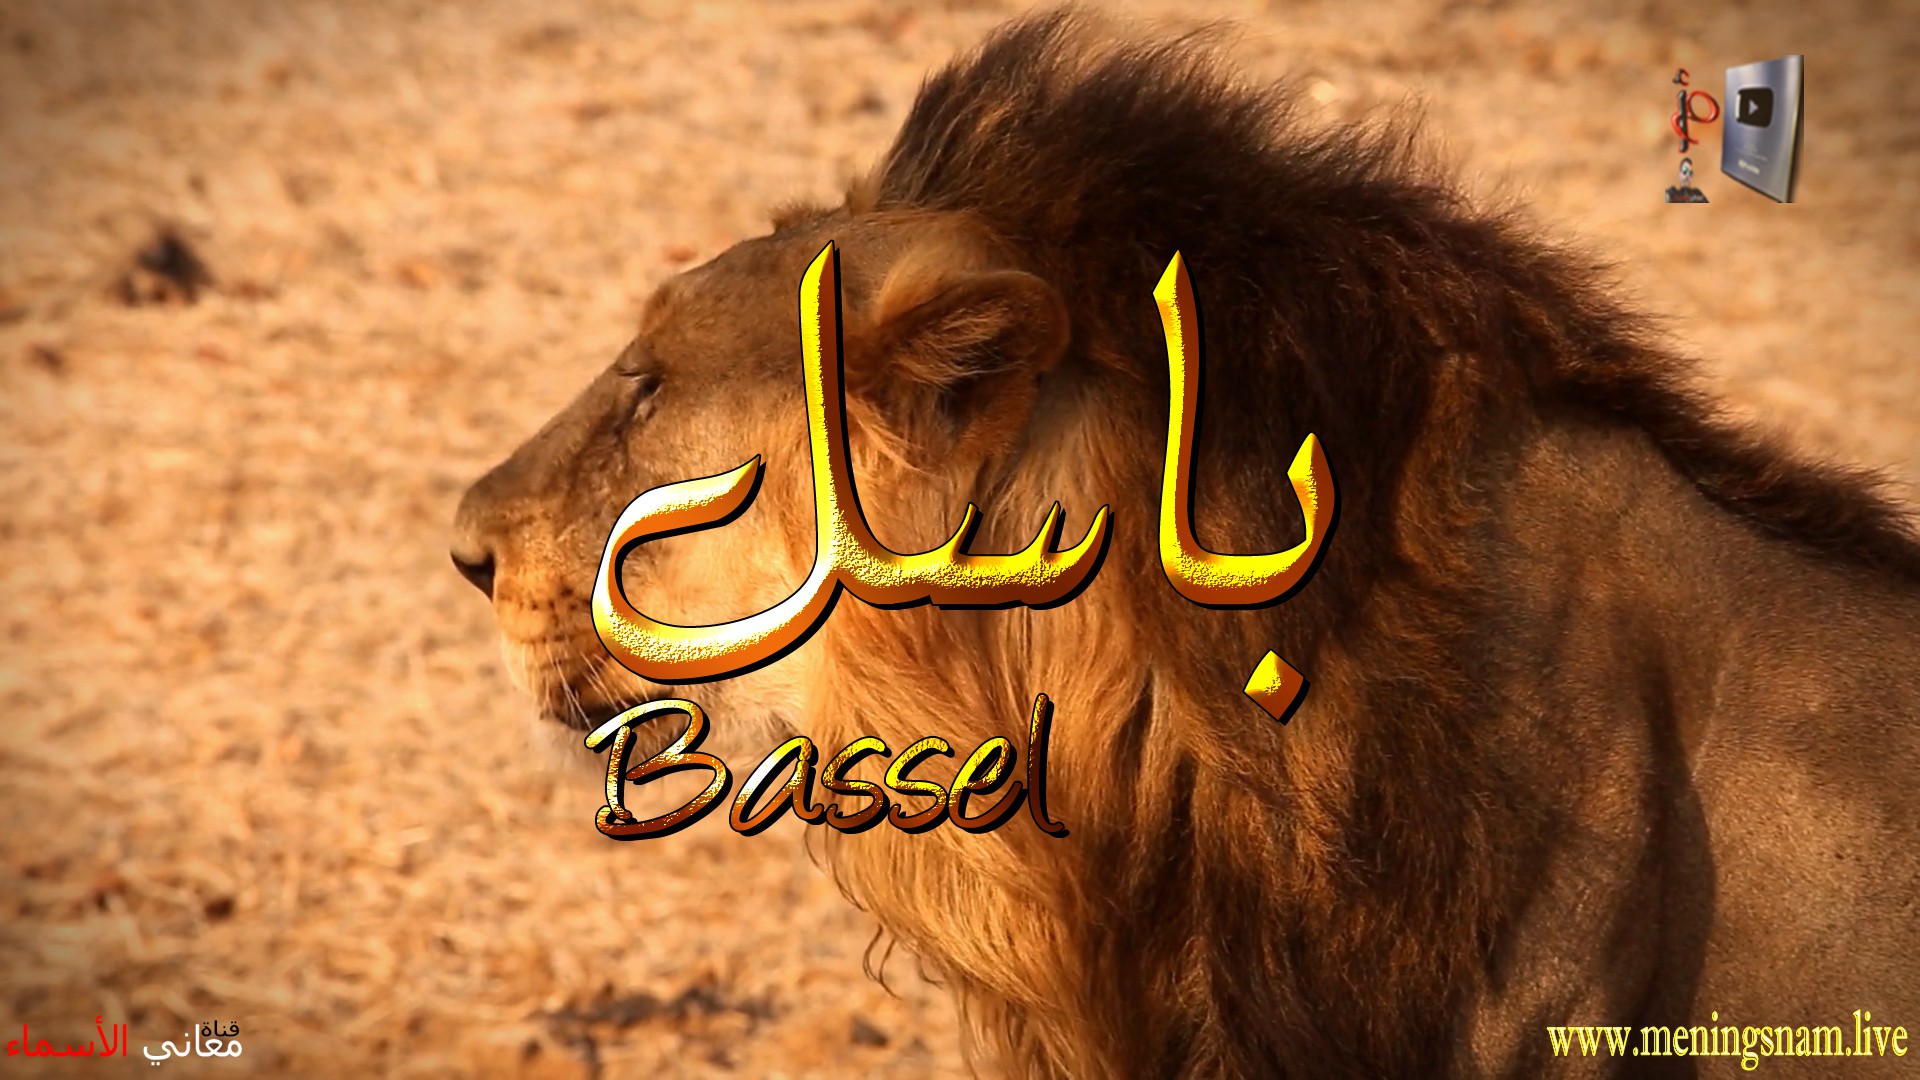 معنى اسم, باسل, وصفات, حامل, هذ الاسم, Bassel,